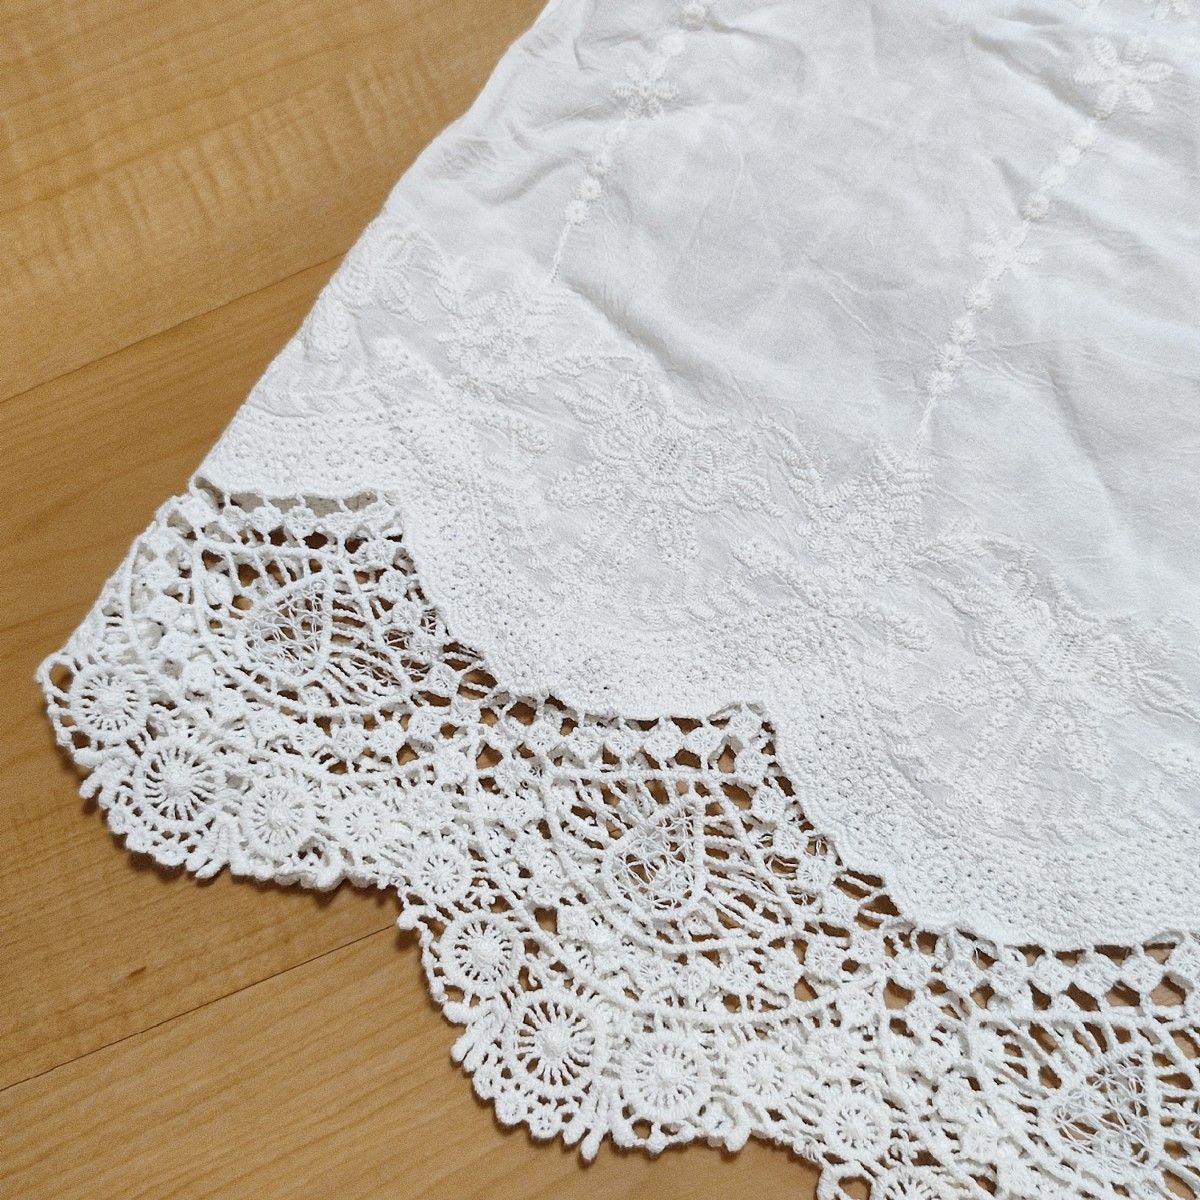 スローブイエナ ケミカルレーススカラップブラウス 5分袖 ホワイト 白 インド綿 刺繍